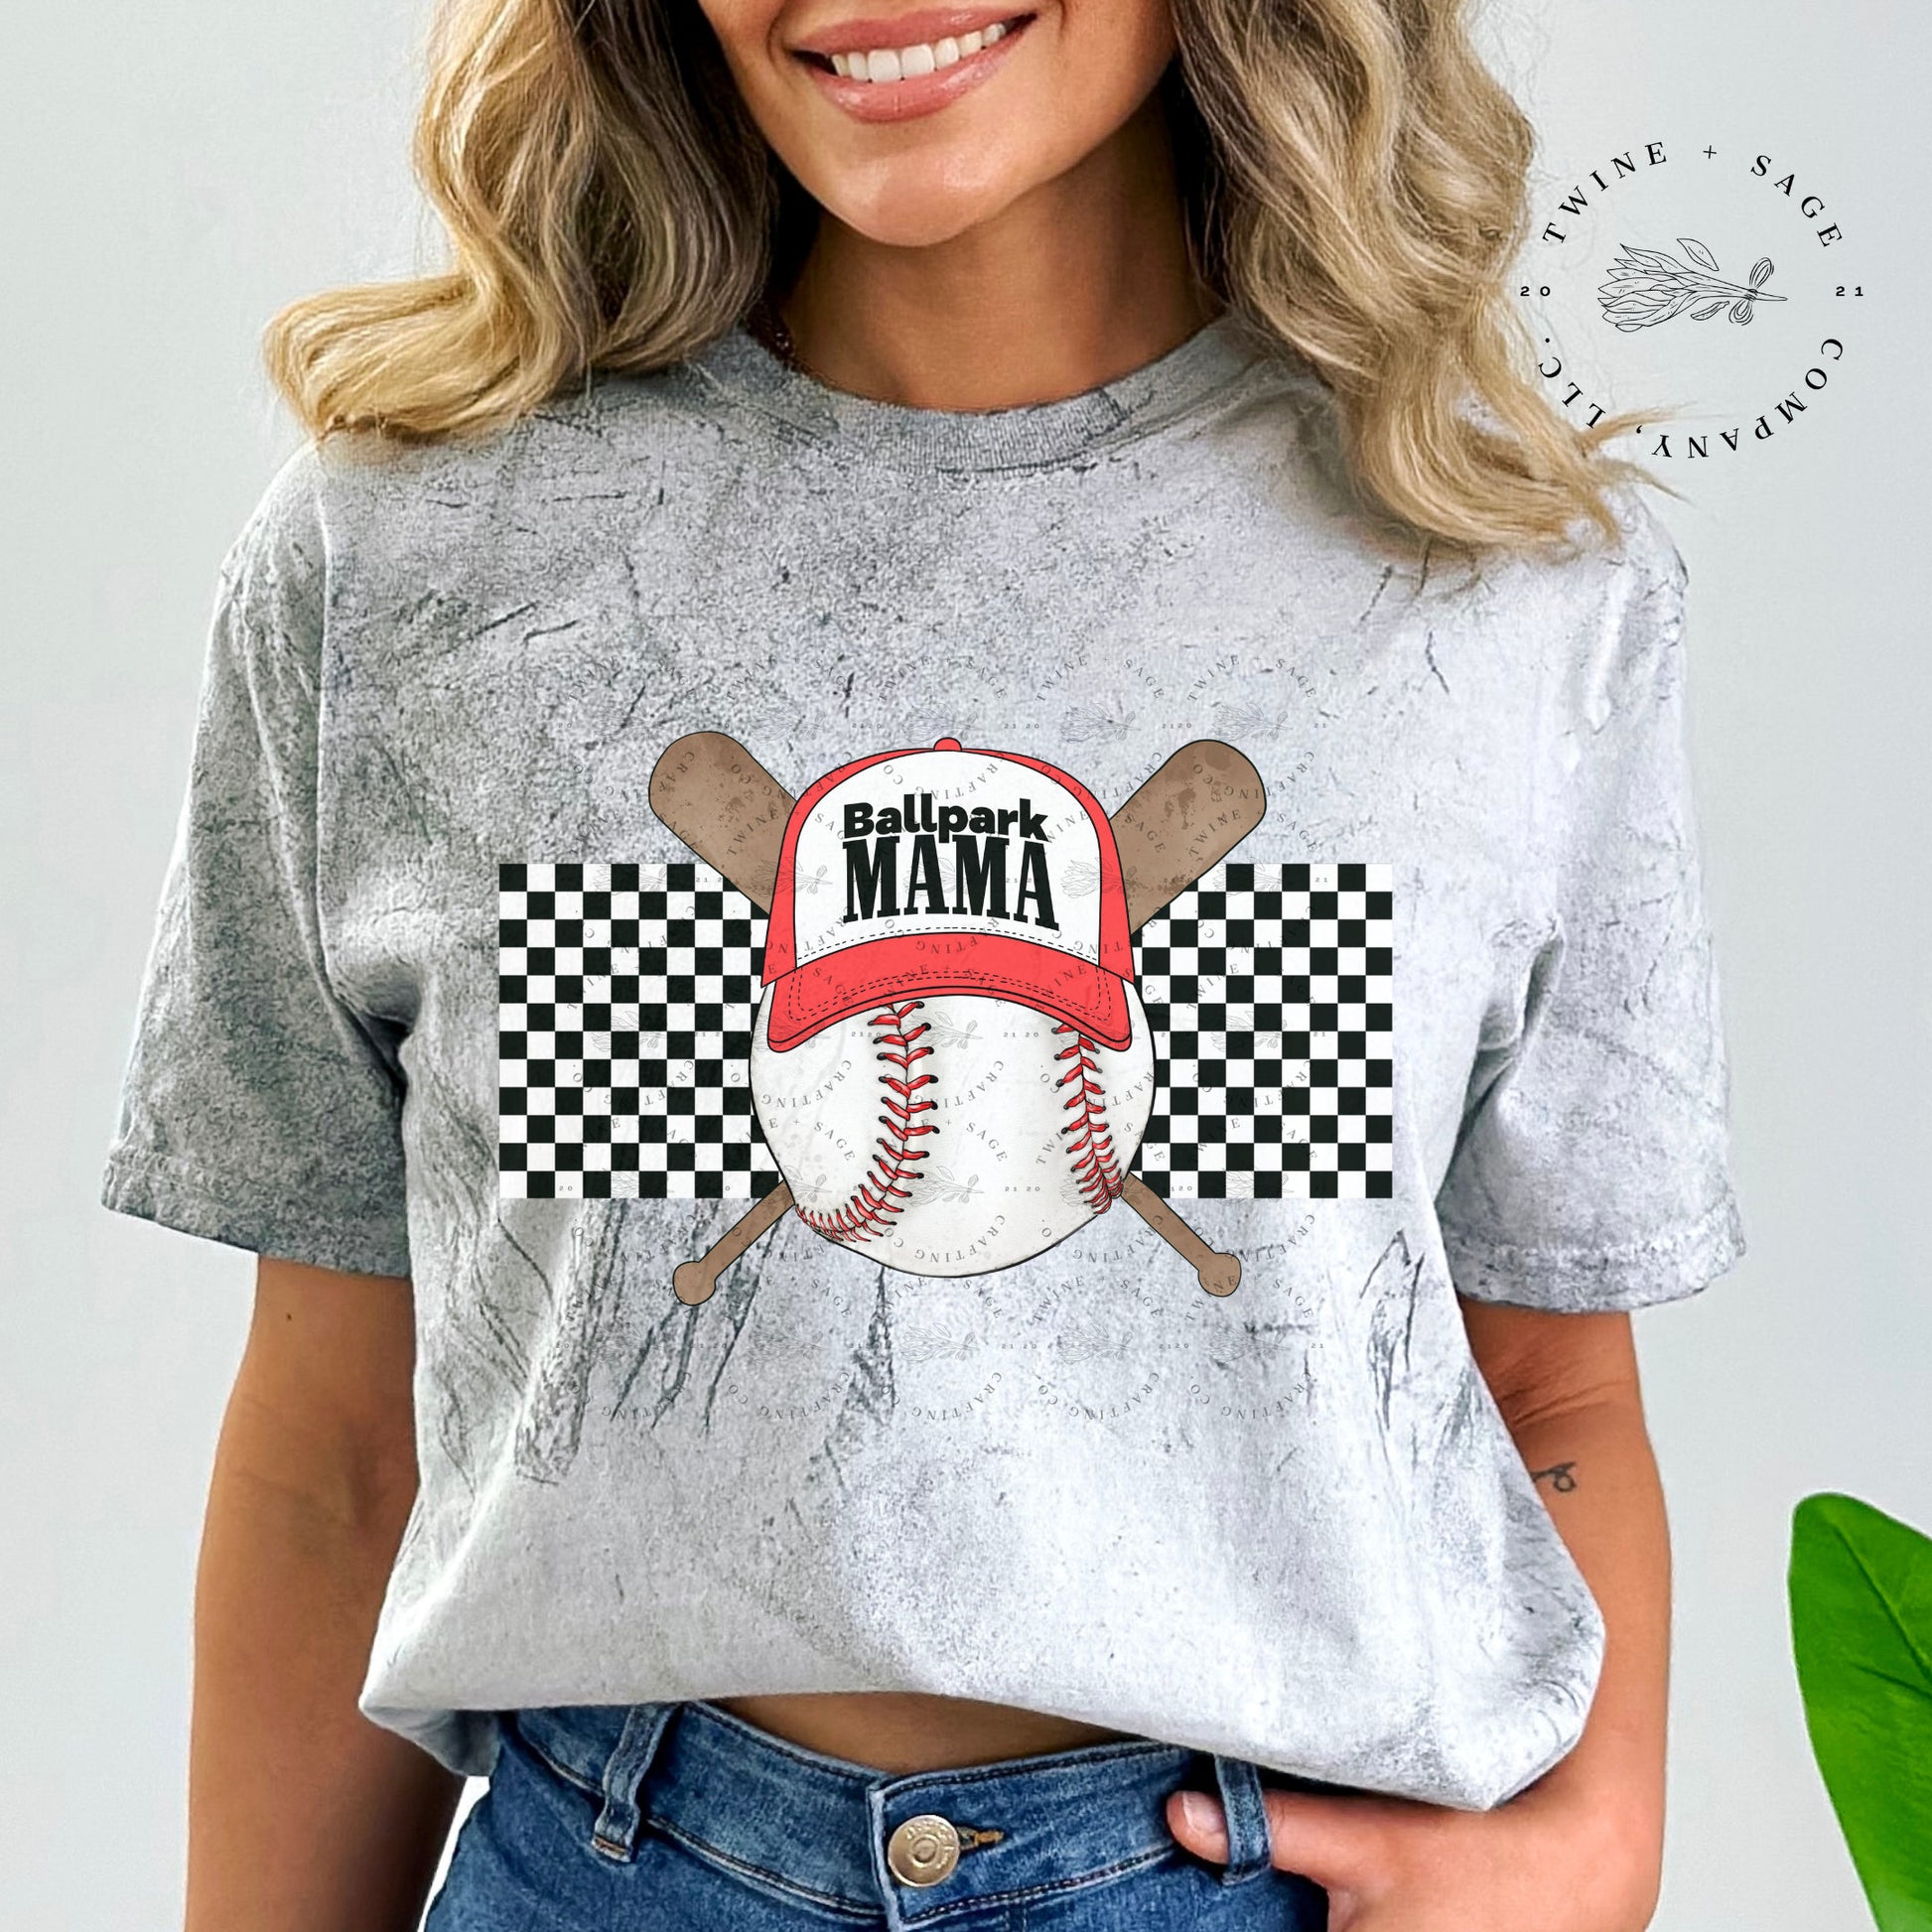 Ballpark Mama Shirt, Baseball Shirt, Baseball Mom Shirt, Baseball Shirt, Graphic Tee Shirt, Comfort Colors Shirt